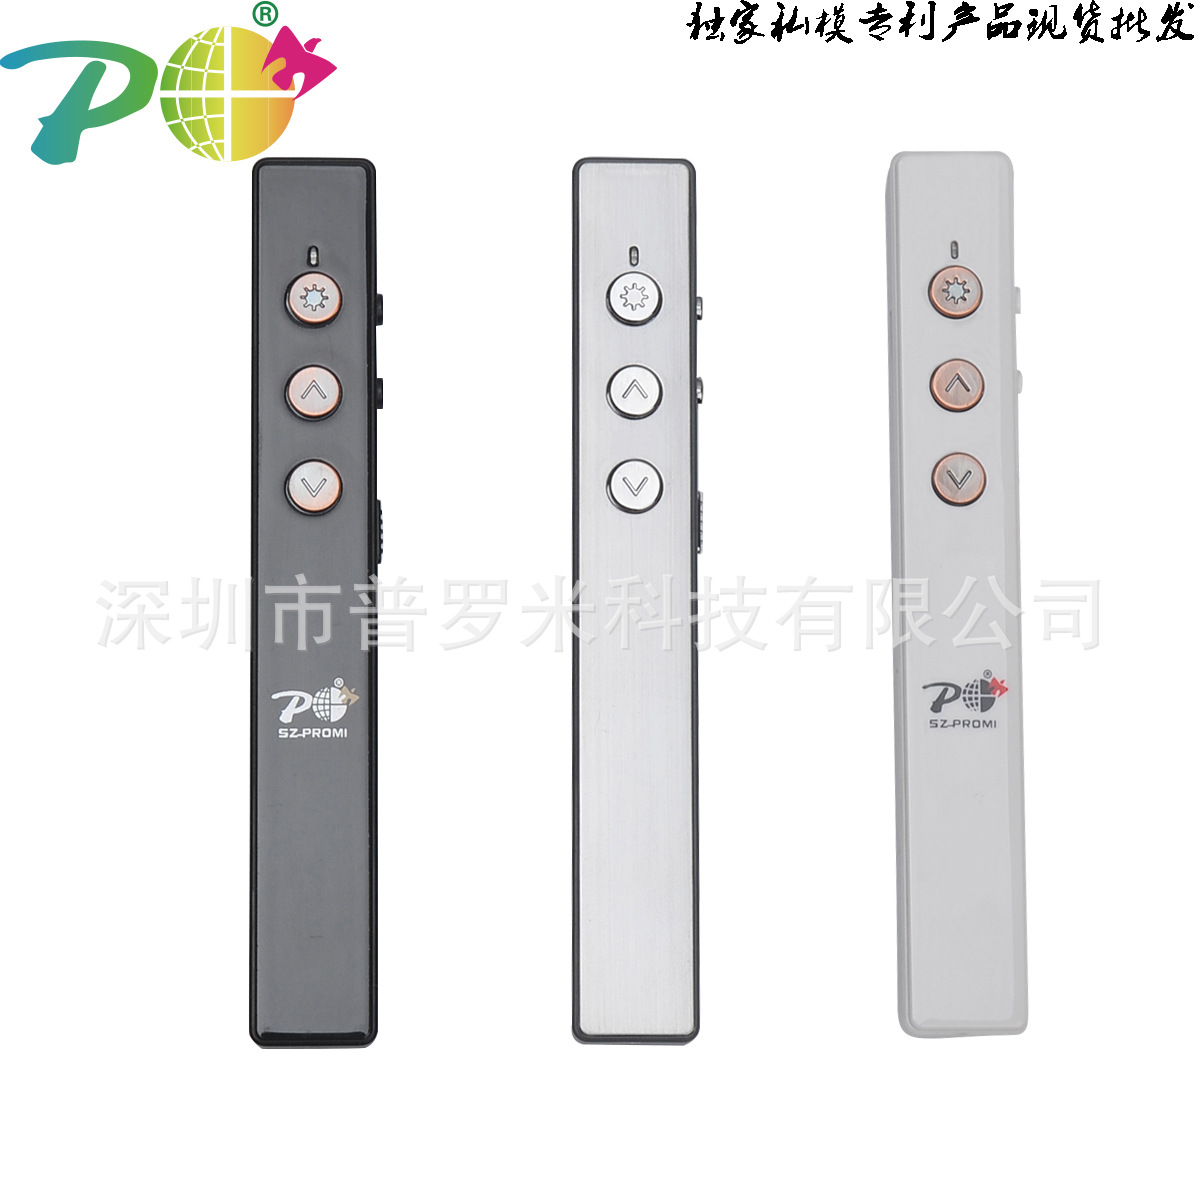 工厂生产研发2.4g无线笔鼠标 二代PR-06电容笔 厂家直销 创意鼠标示例图70